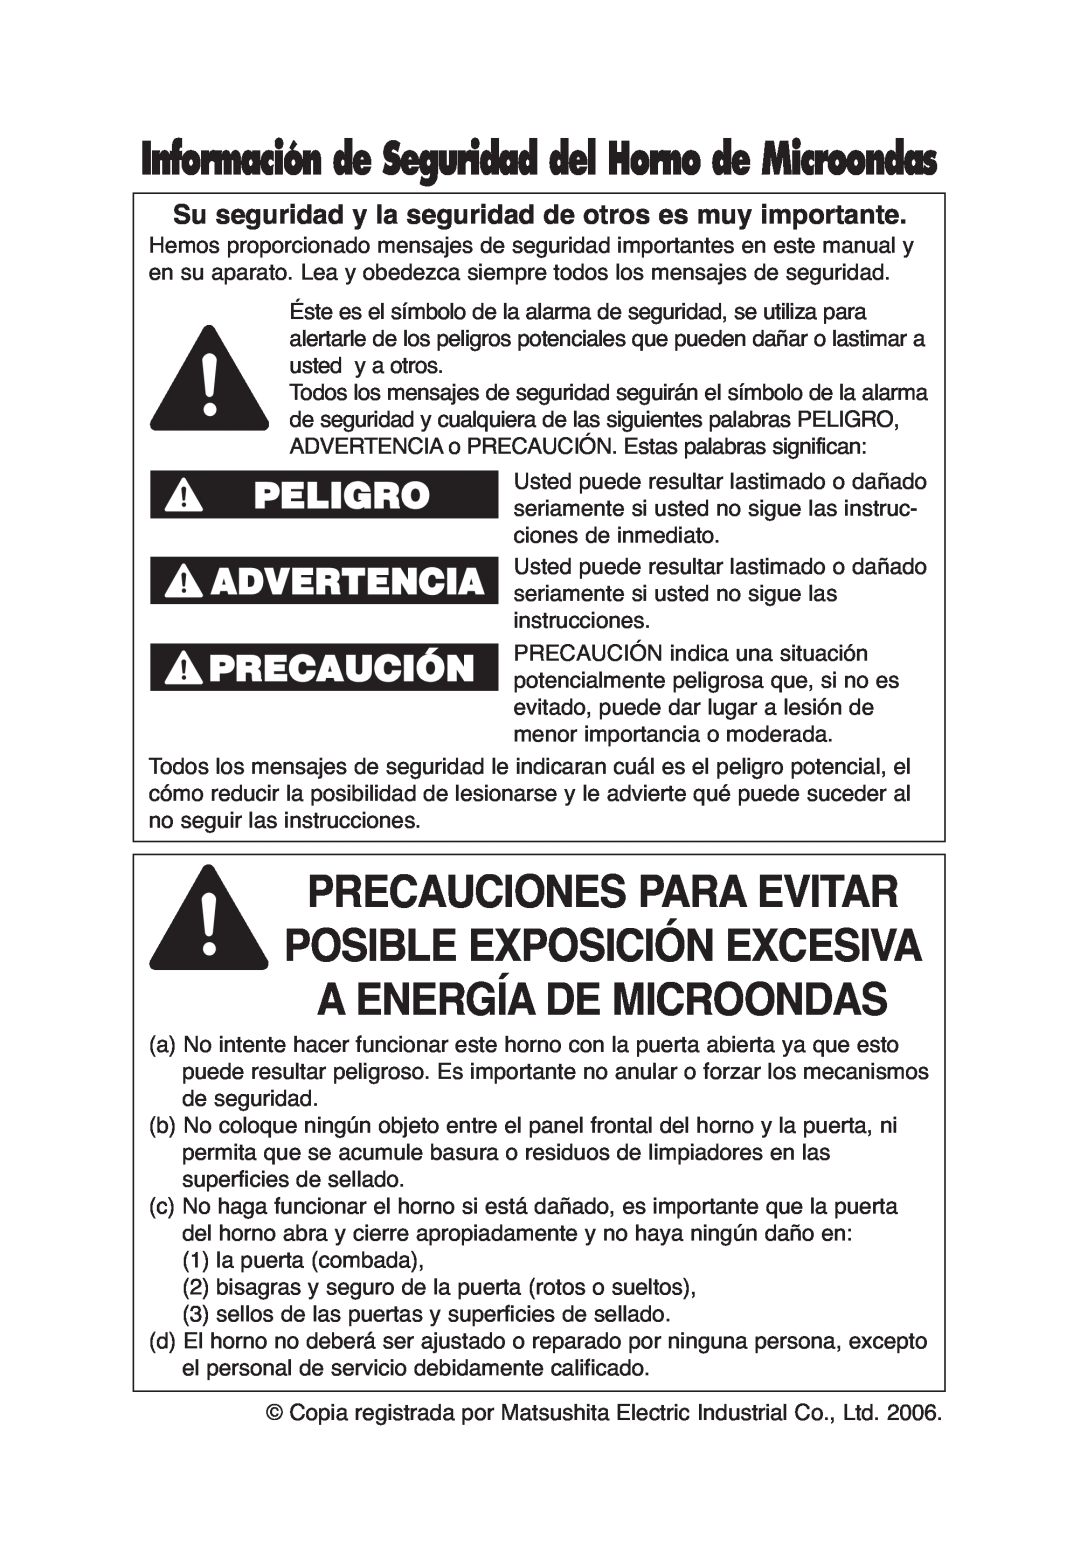 Panasonic S754, S954, S955, SA746 Peligro Advertencia, Información de Seguridad del Horno de Microondas 